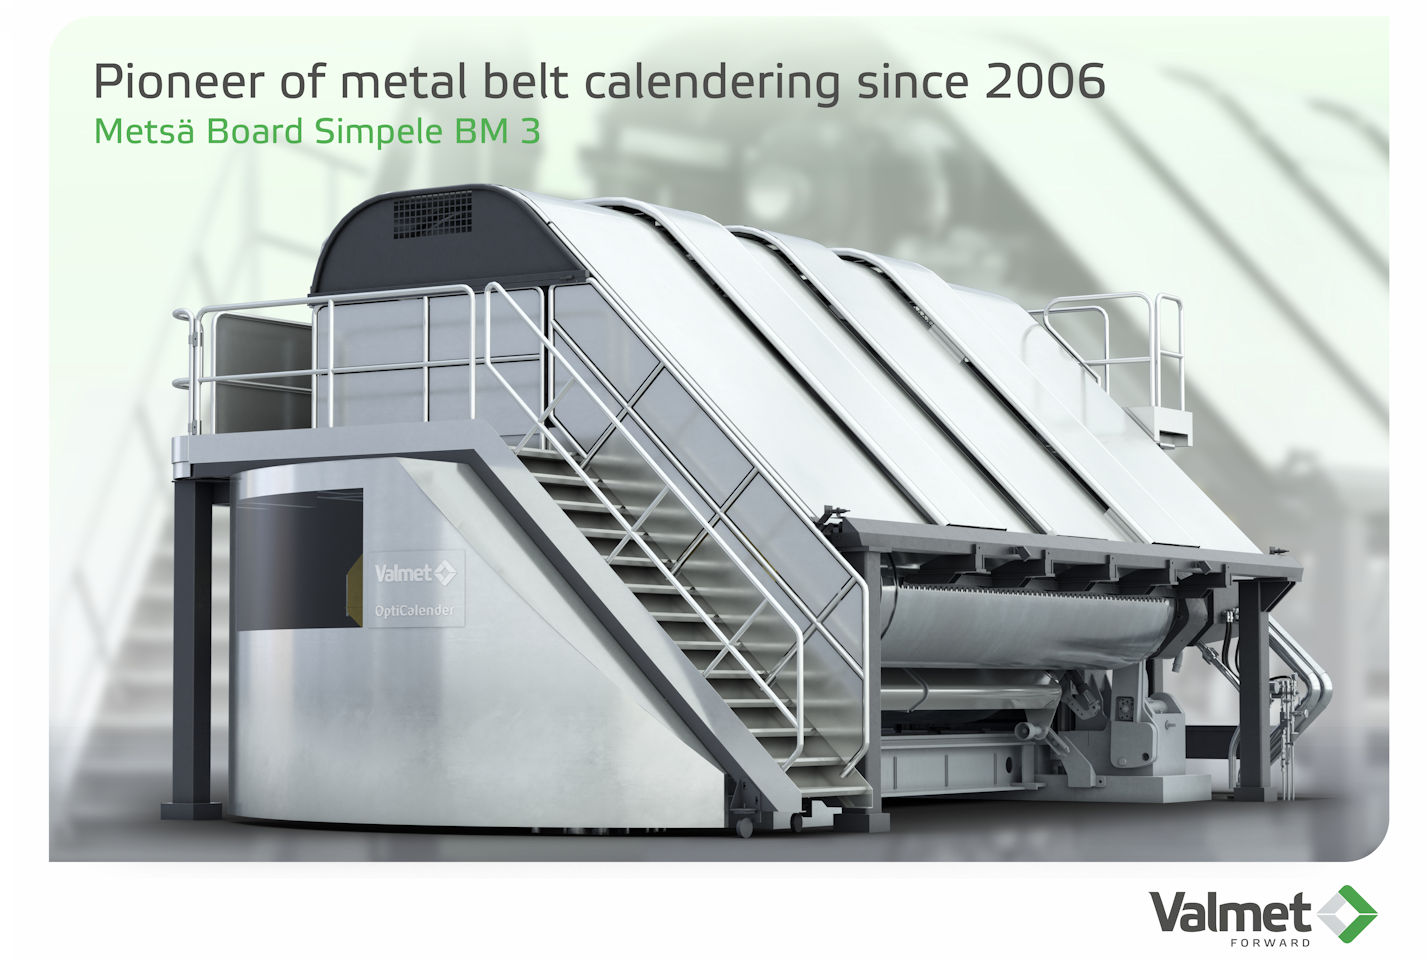 Veli-Pekka Kyllönen, Metsä Board Joutseno和Simpele Mills的副总裁和磨坊经理，收到了一个金属带压光广告牌作为十周年纪念。Valmet公司的Mika Viljanmaa发表了喜庆的演讲